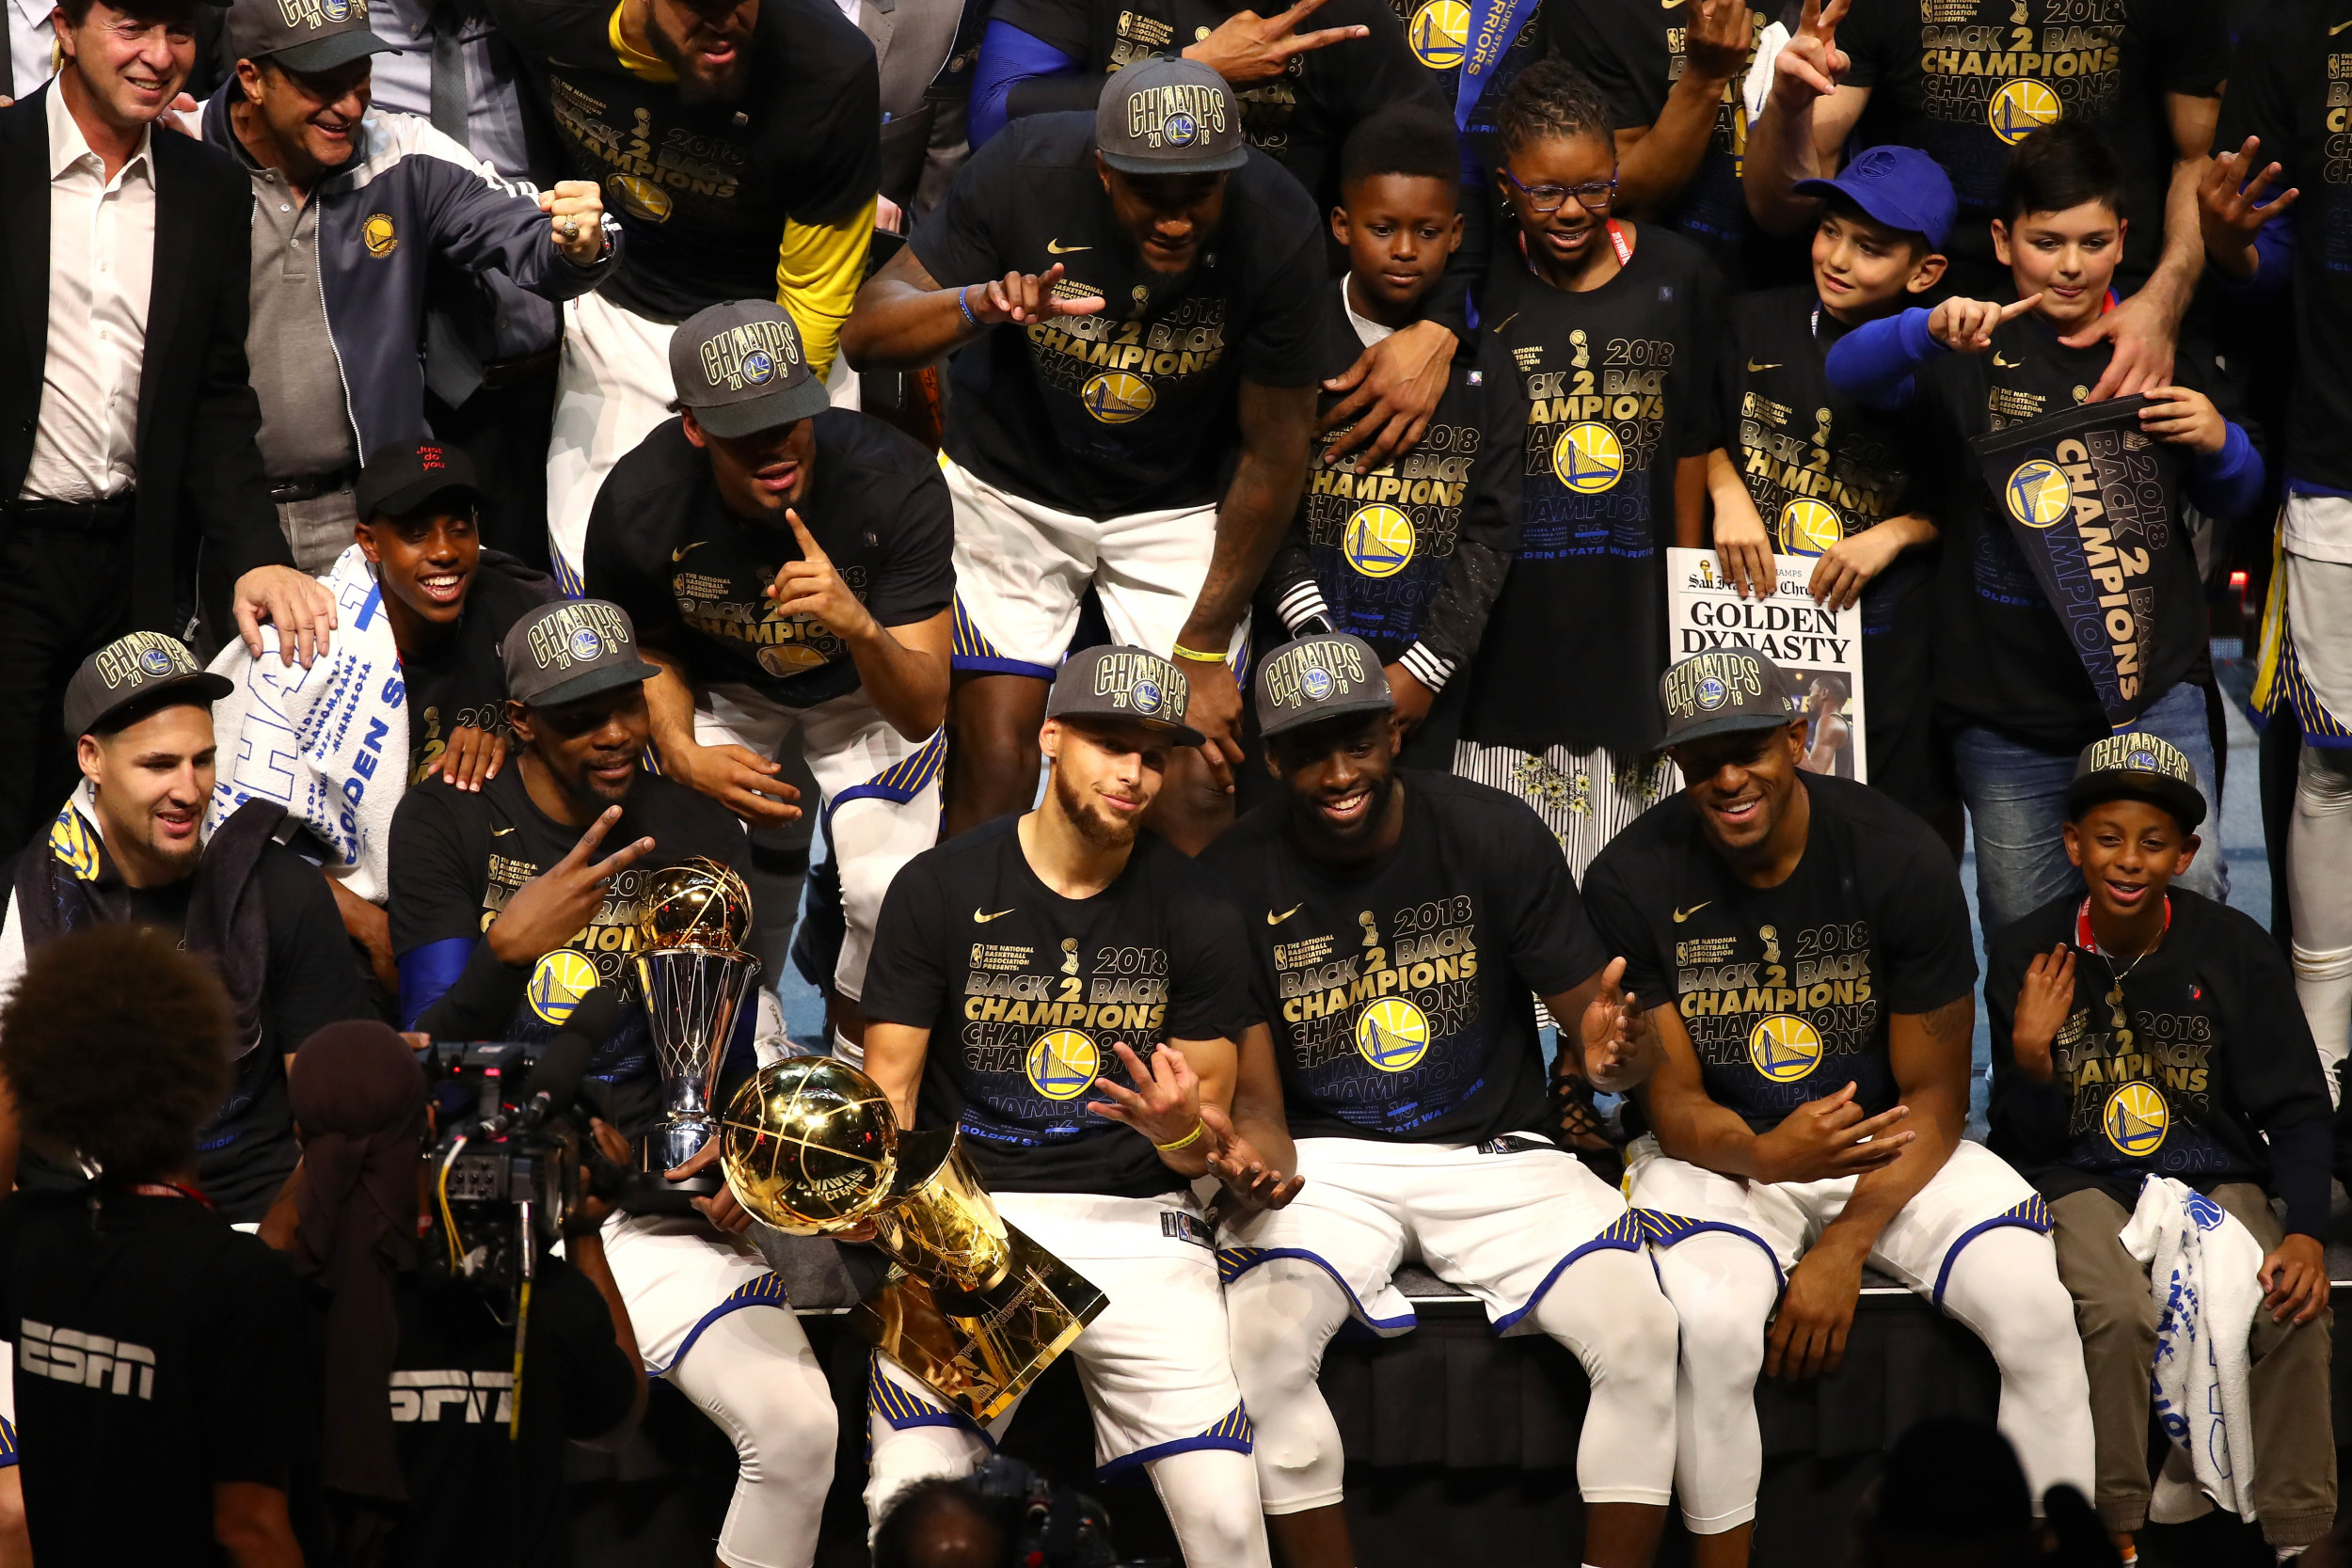 Golden State Warriors NBA Champions 2015 T-Shirts & Gear